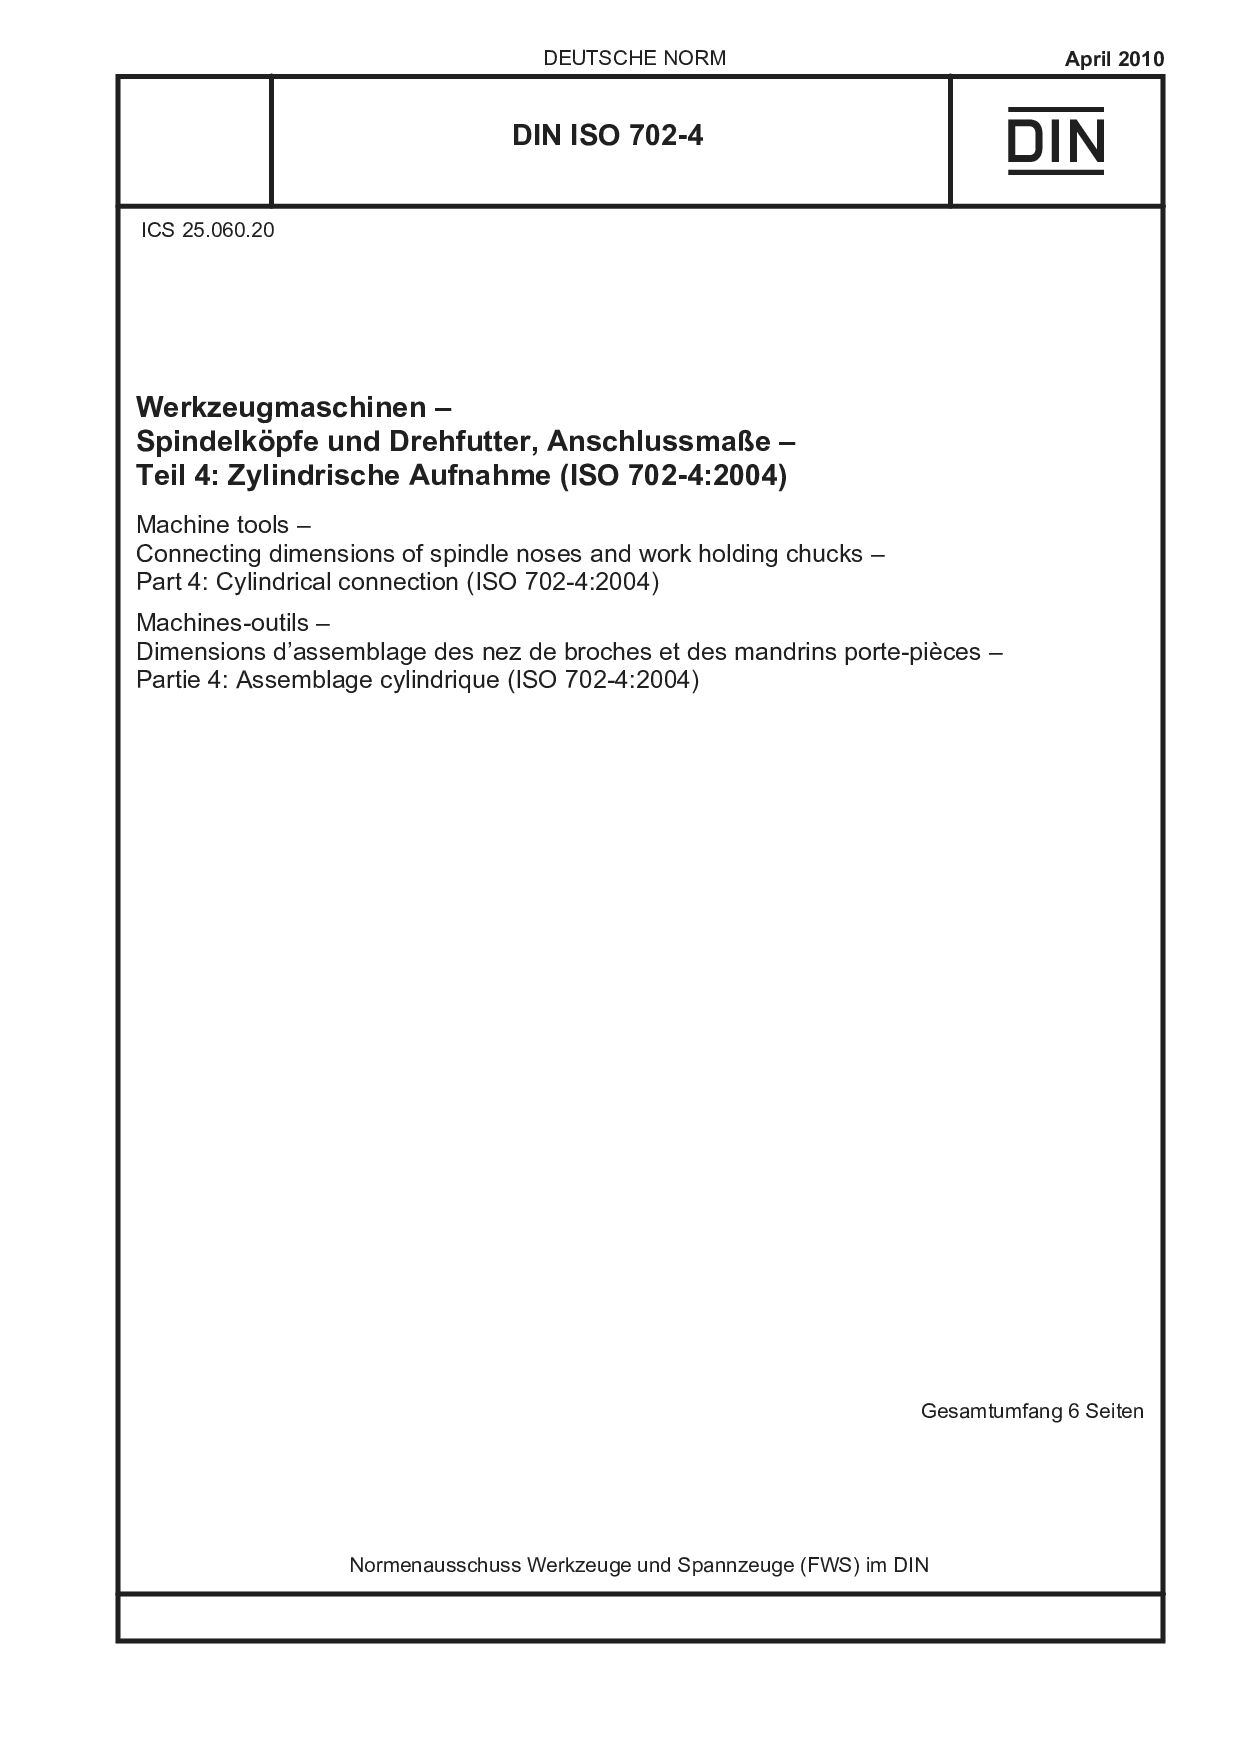 DIN ISO 702-4:2010封面图